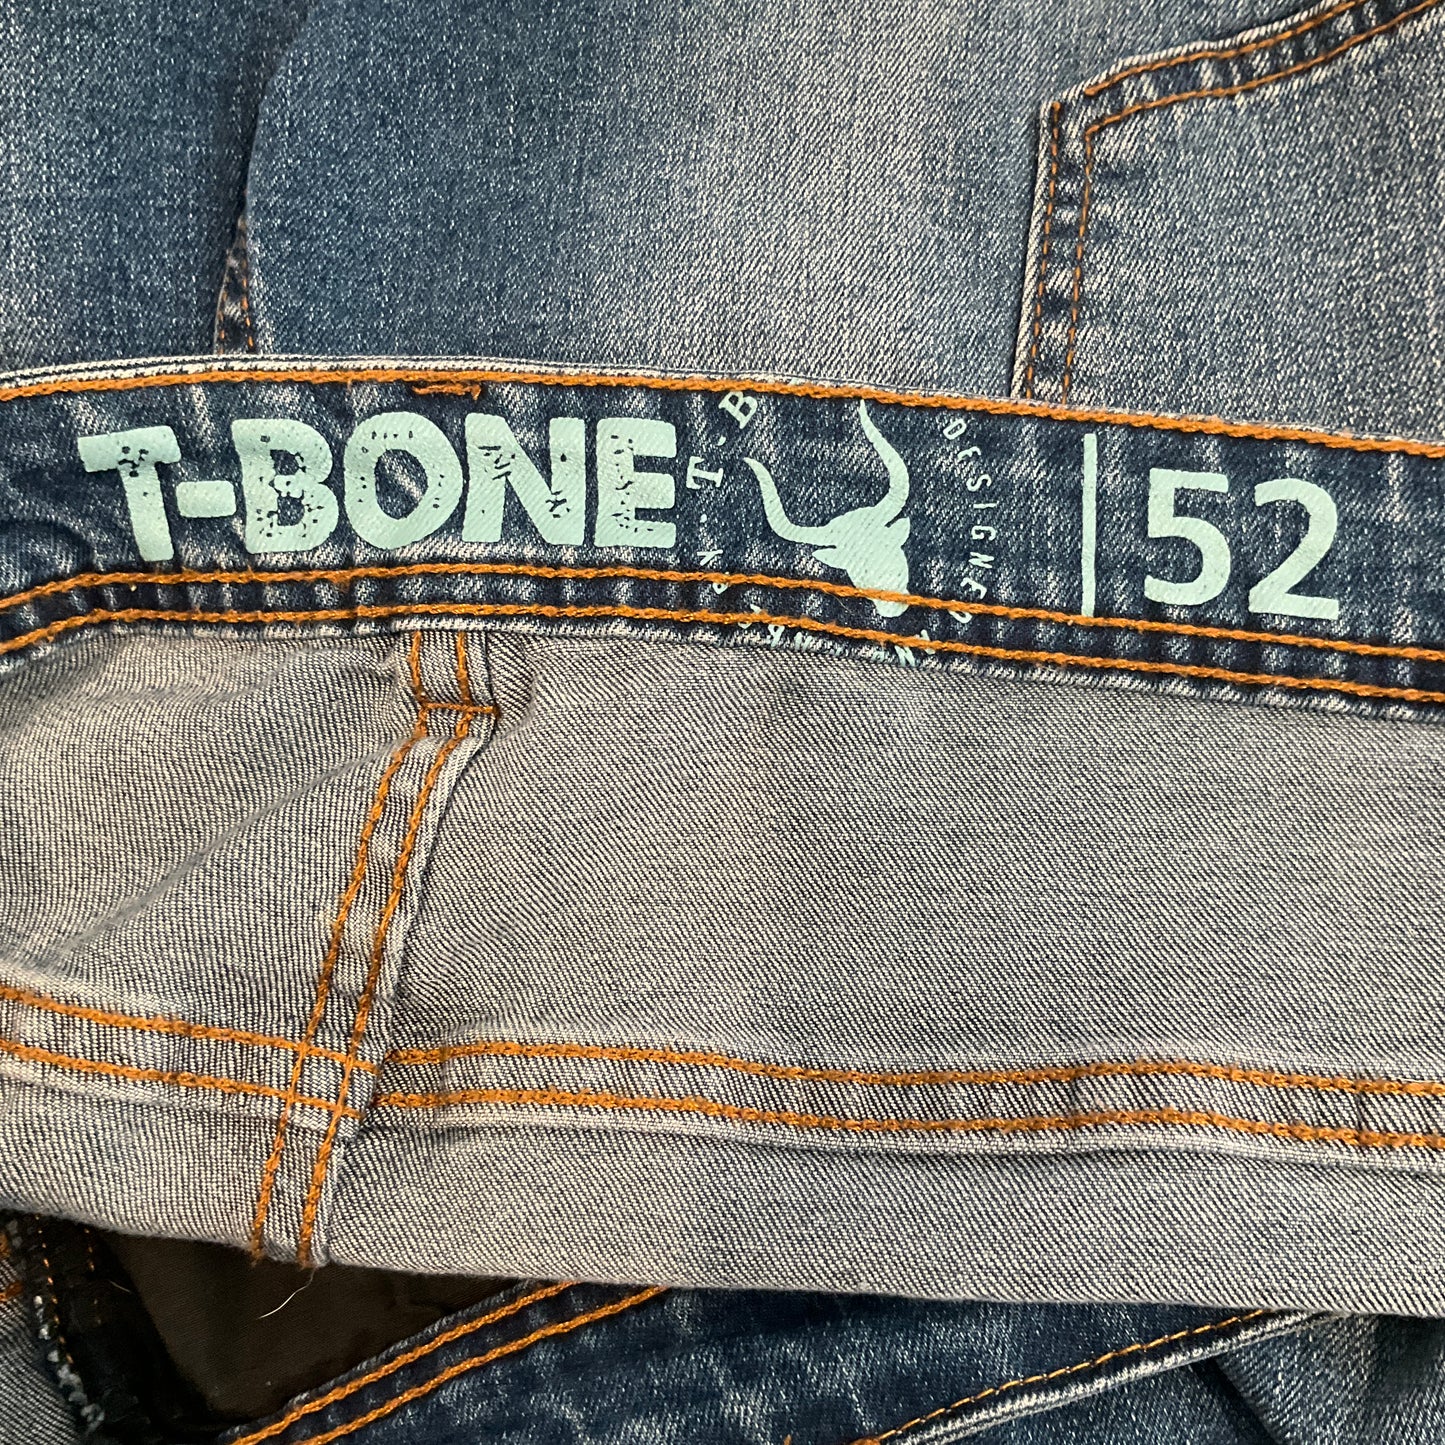 T-Bone - Straight Cut Jeans